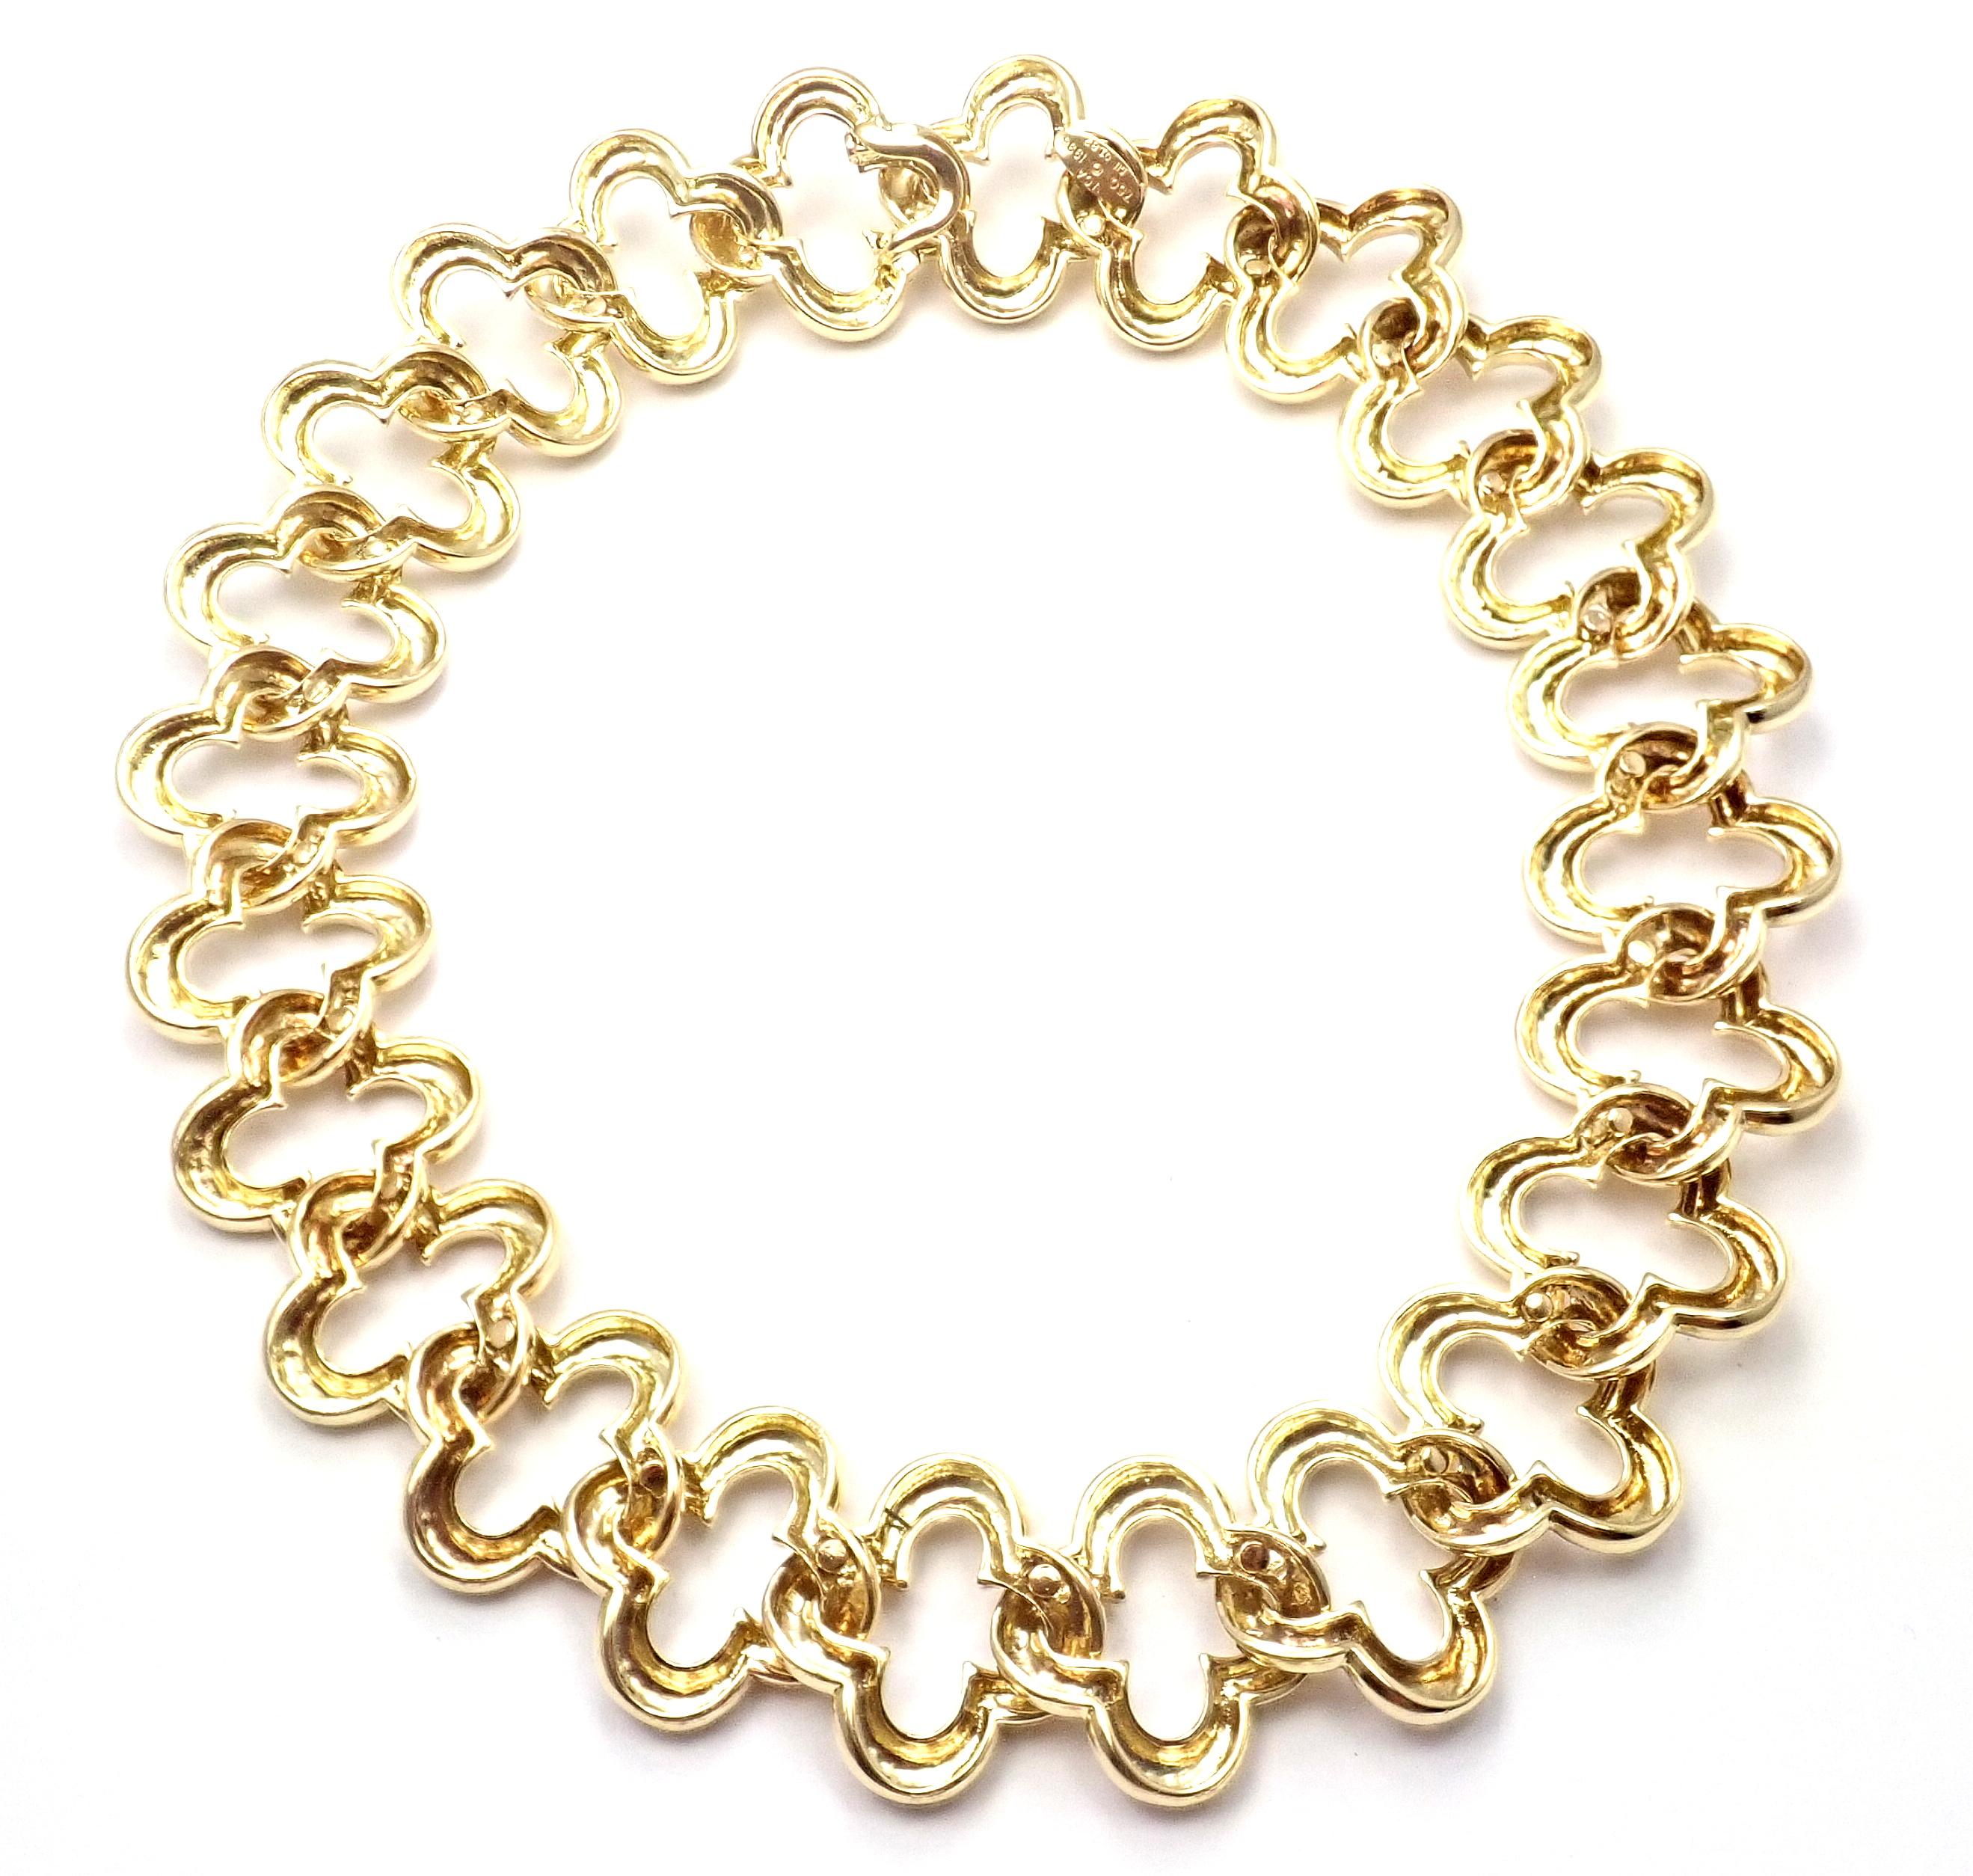 18k Gelbgold 24 große Motive Alhambra Choker Halskette von Van Cleef & Arpels. 
Mit 24 großen Motiven aus 18k Gelbgold Alhambras je 1